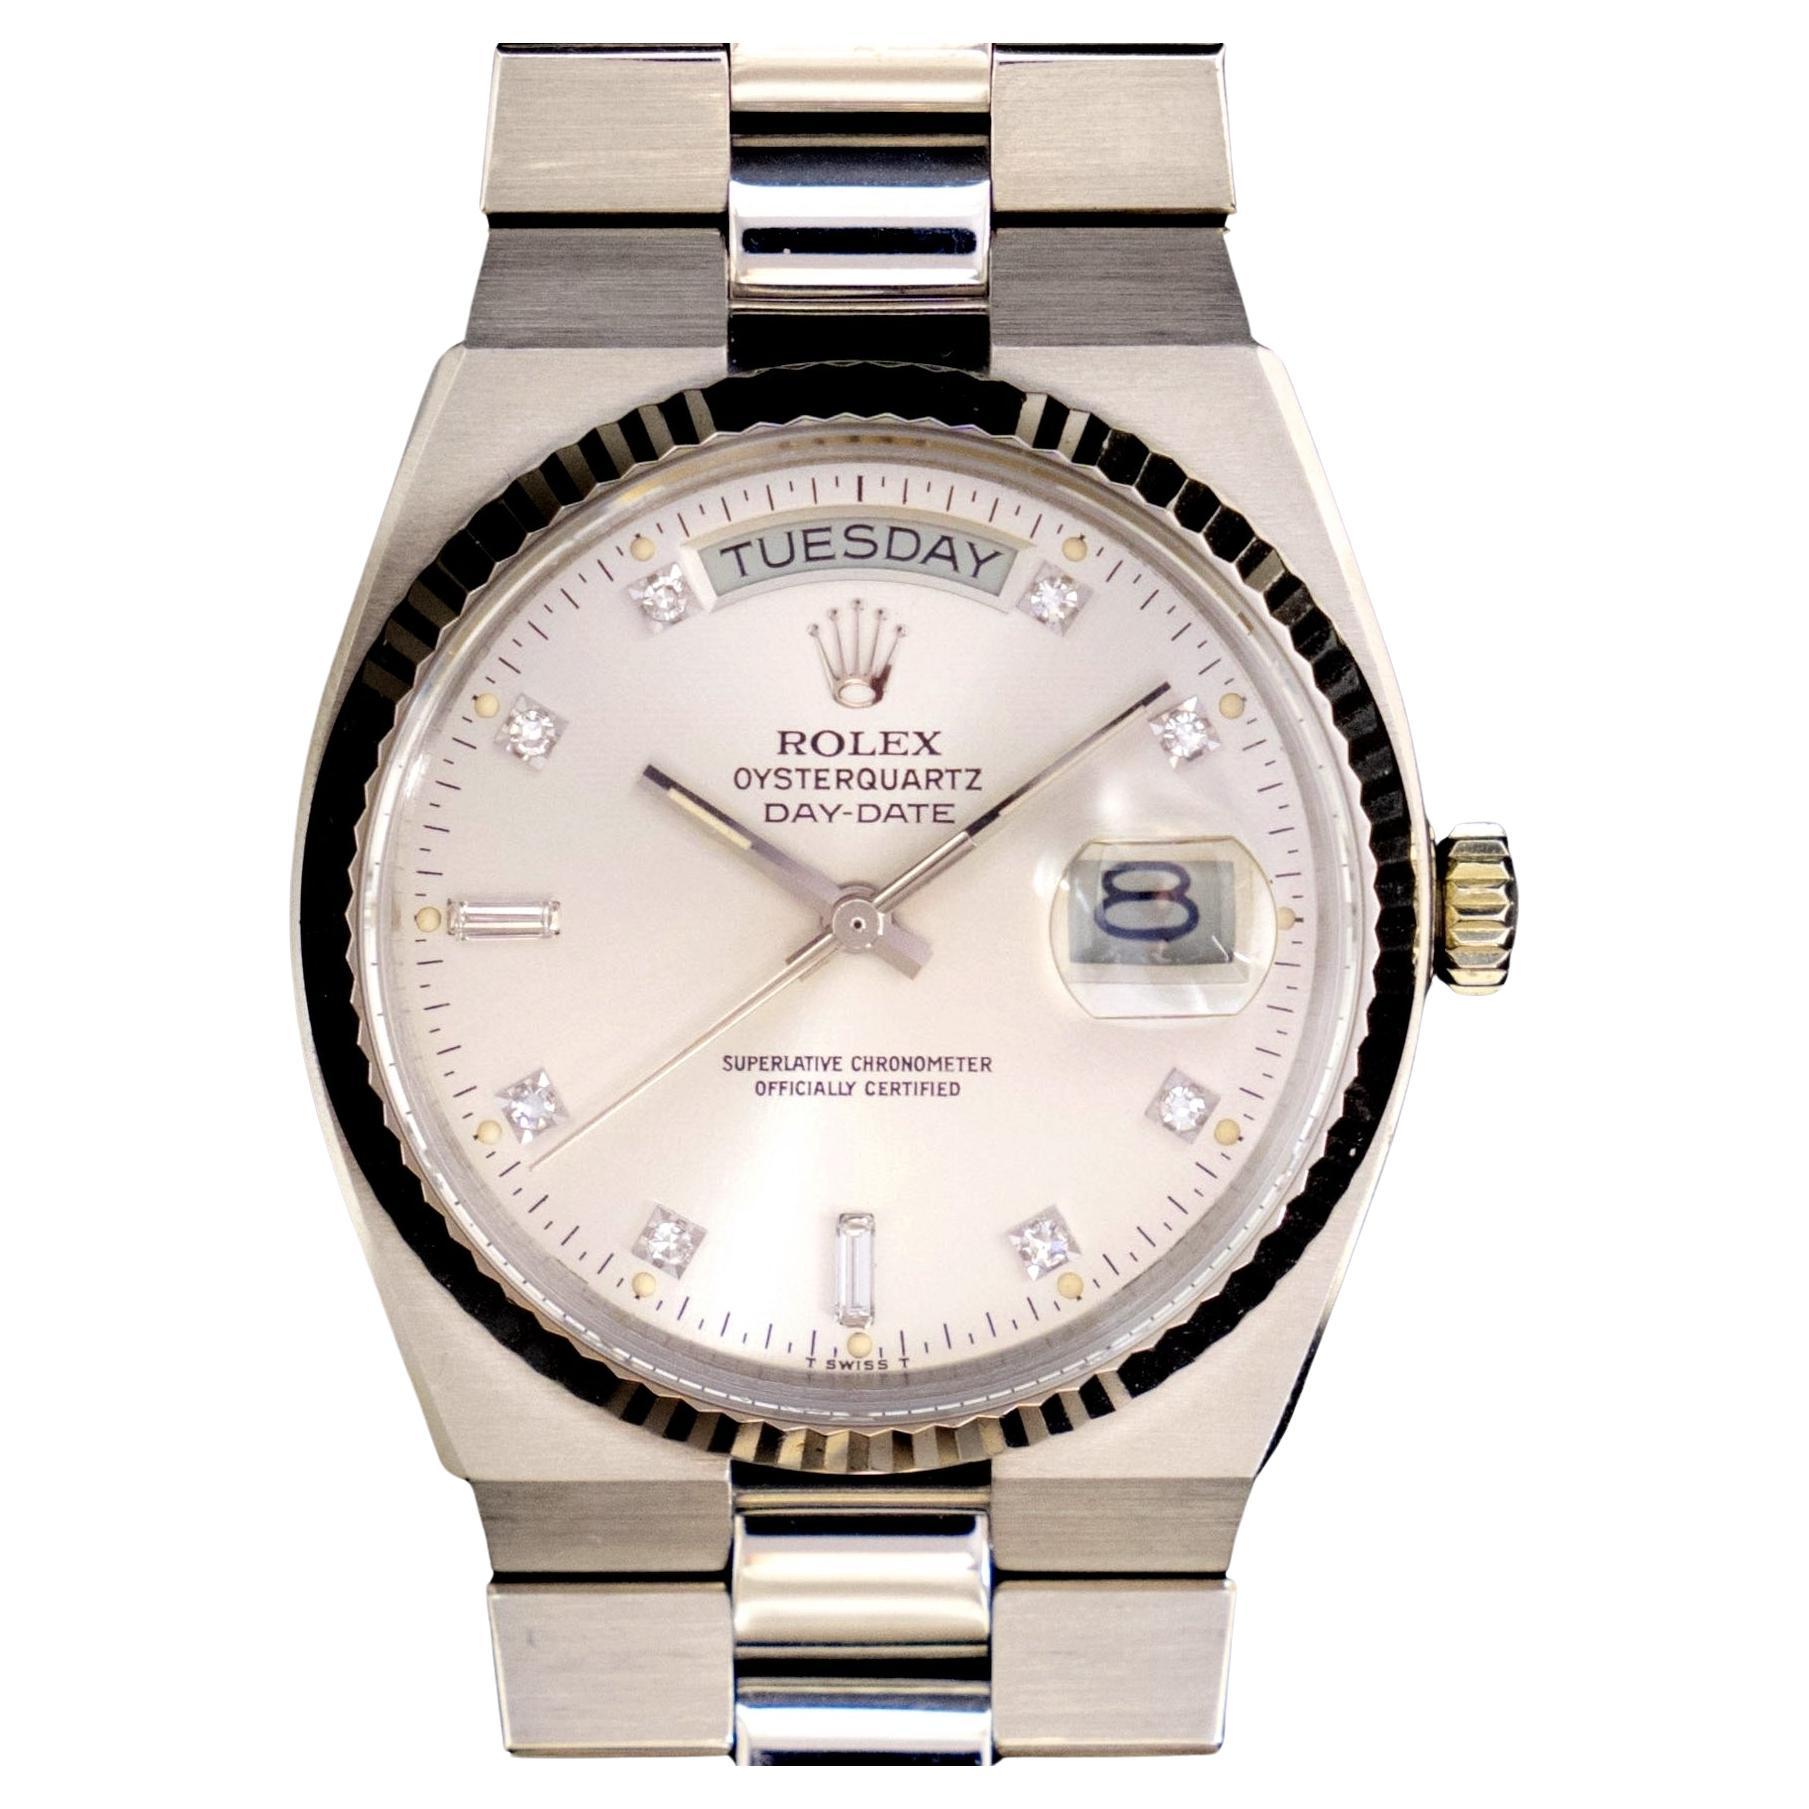 Rolex Oysterquartz Day-Date Montre en or blanc 18 carats avec cadran en argent et diamants 19019, 1979